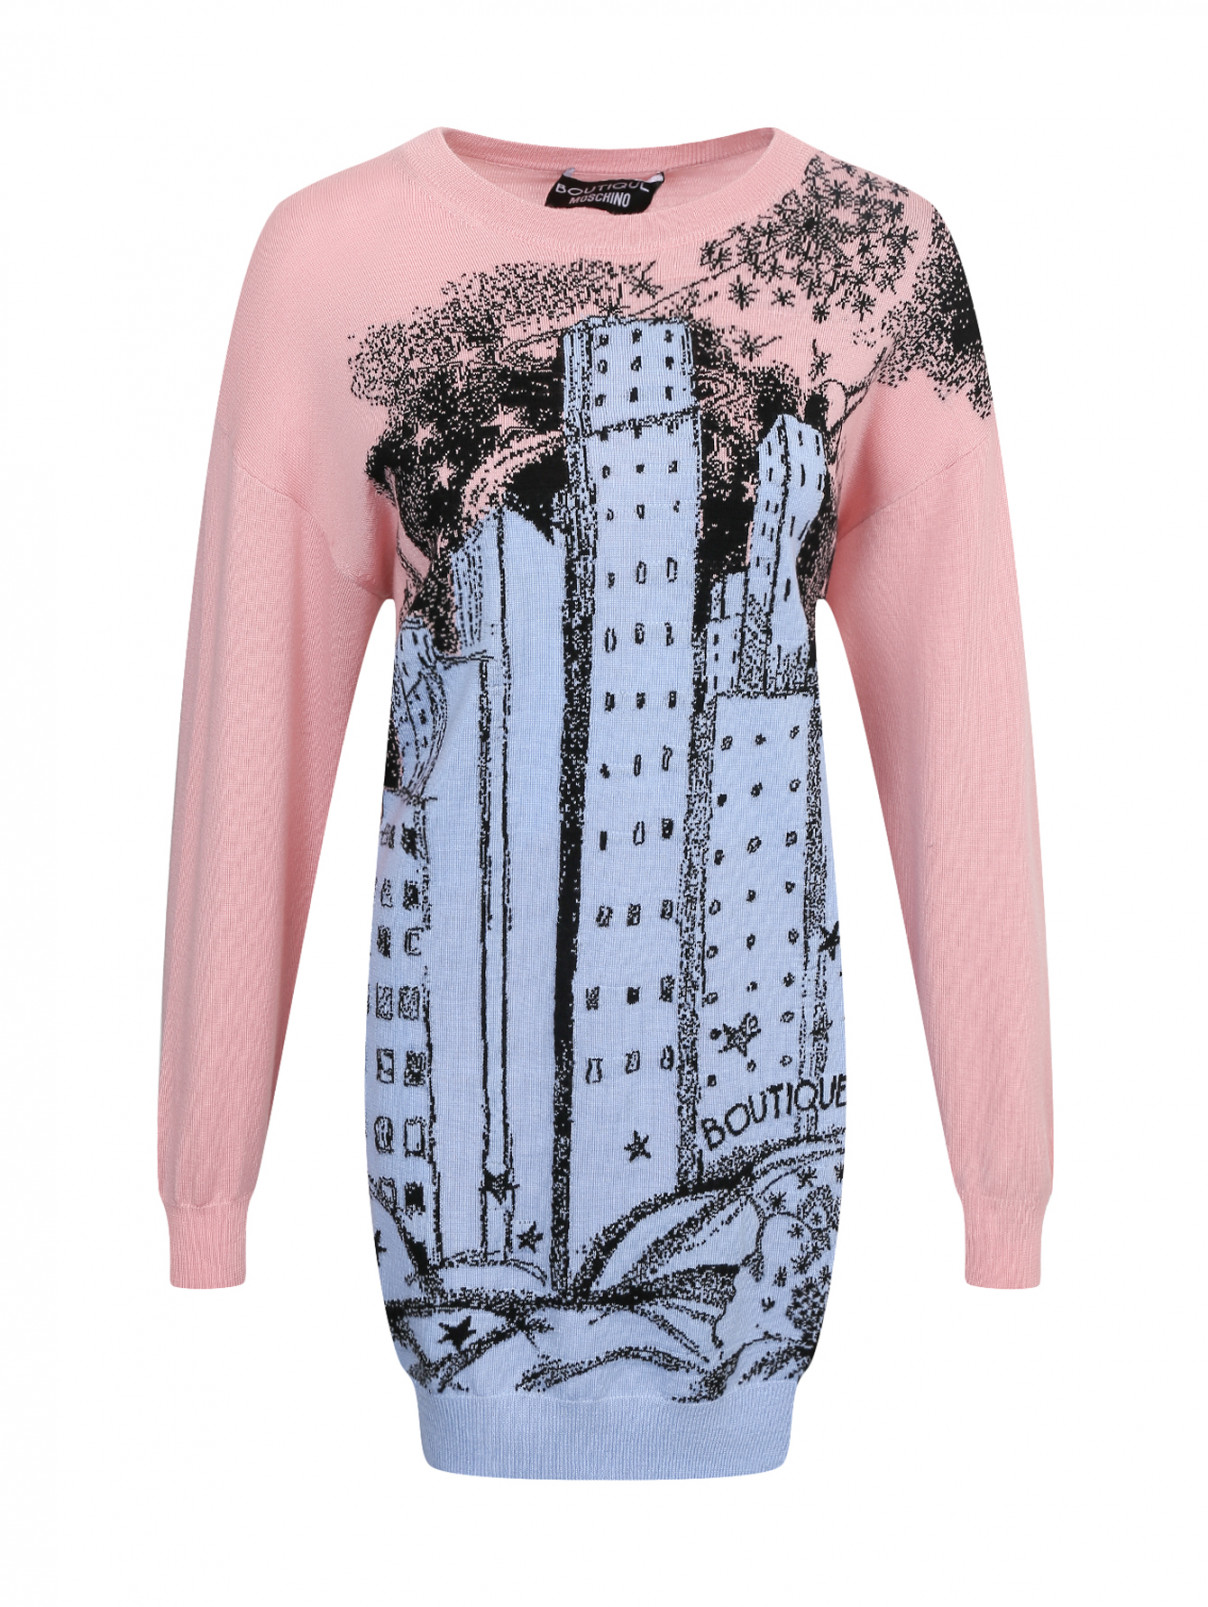 Платье из шерсти с узором Moschino Boutique  –  Общий вид  – Цвет:  Розовый